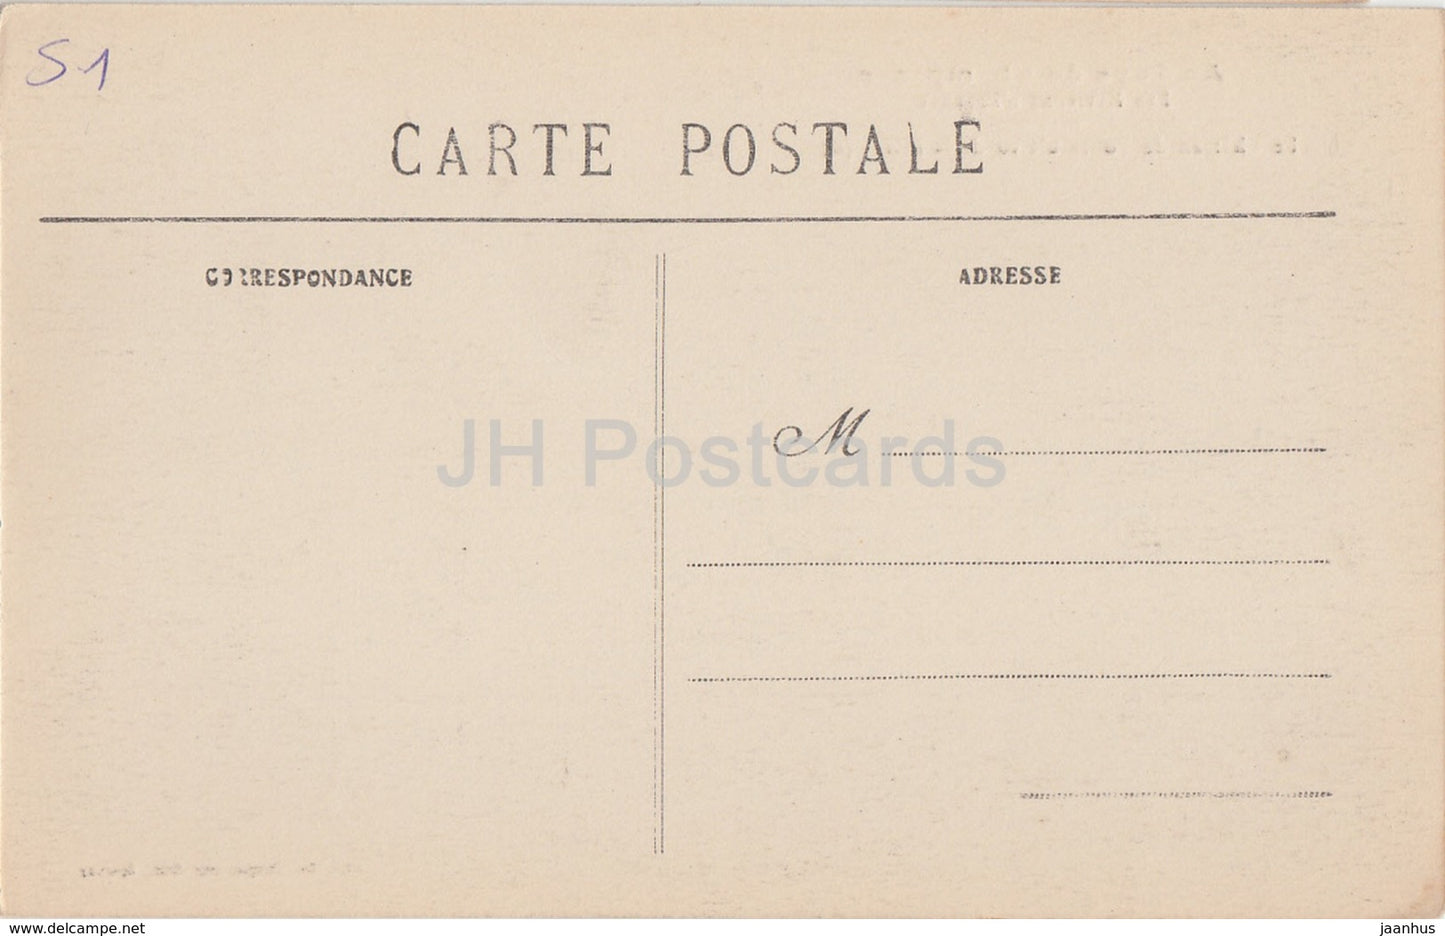 Le Château de Boursault vu de la Plaine - Au Pays du Champagne - château - 65 - carte postale ancienne - France - inutilisée